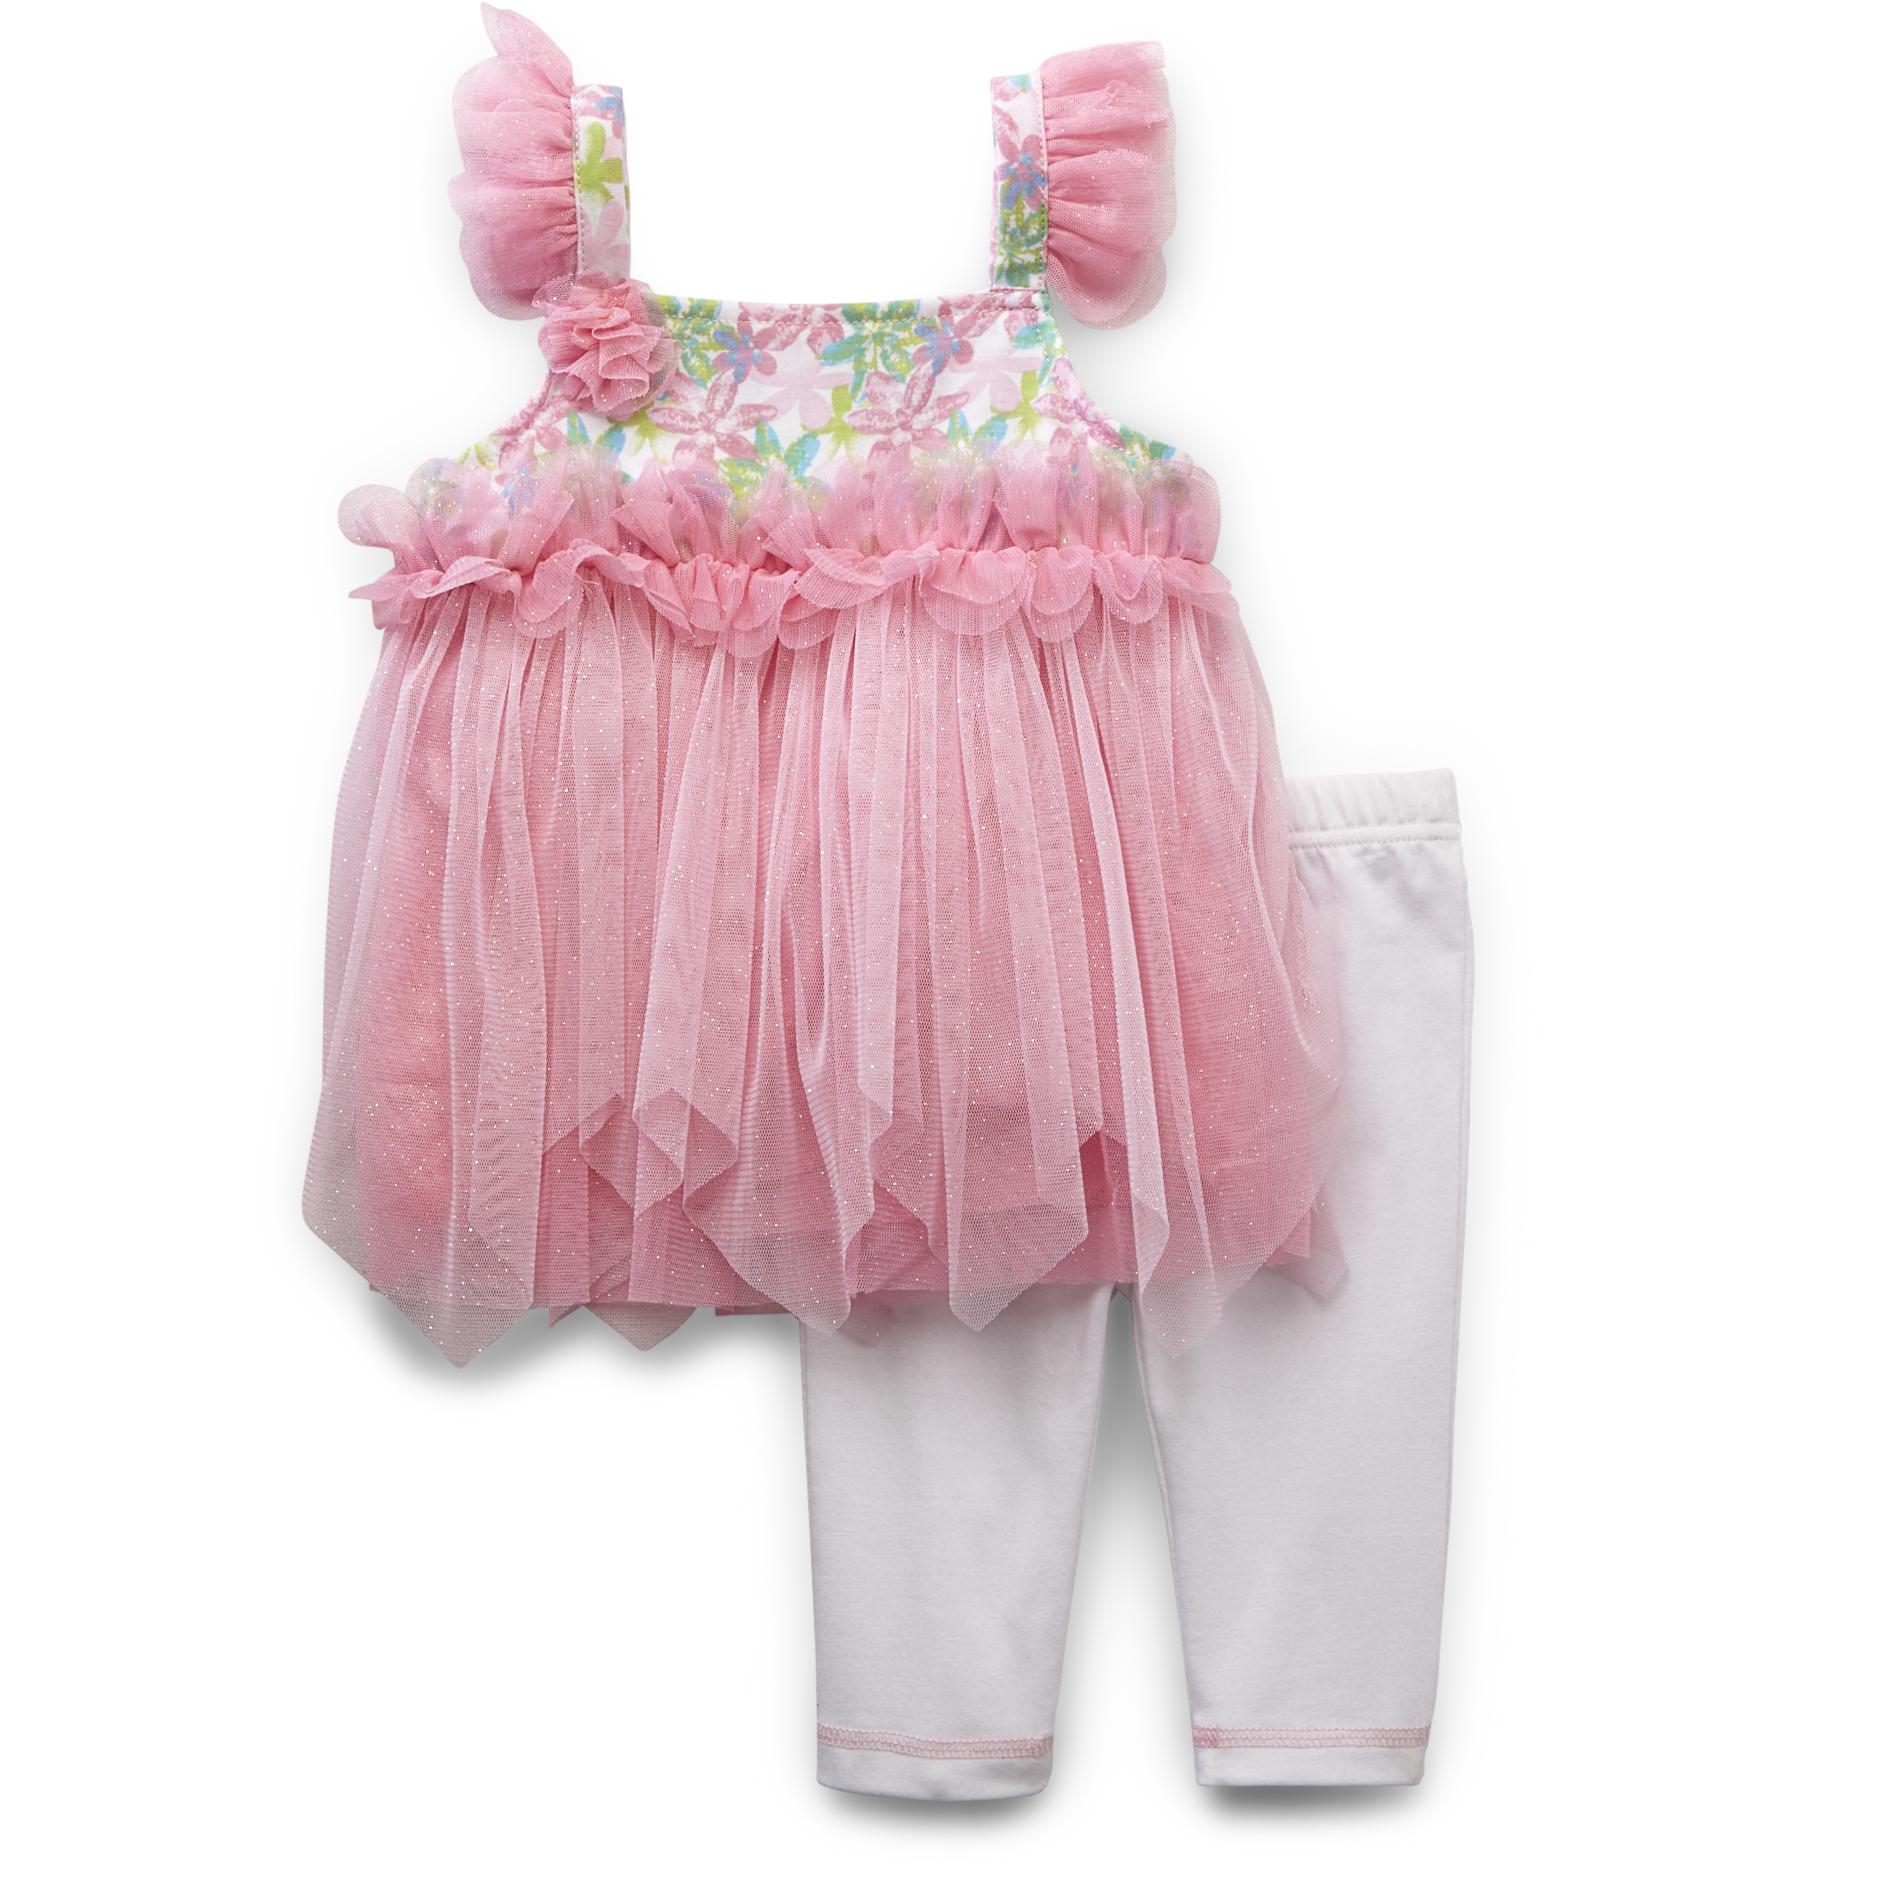 WonderKids Infant & Toddler Girl's Tutu Dress & Leggings - Floral